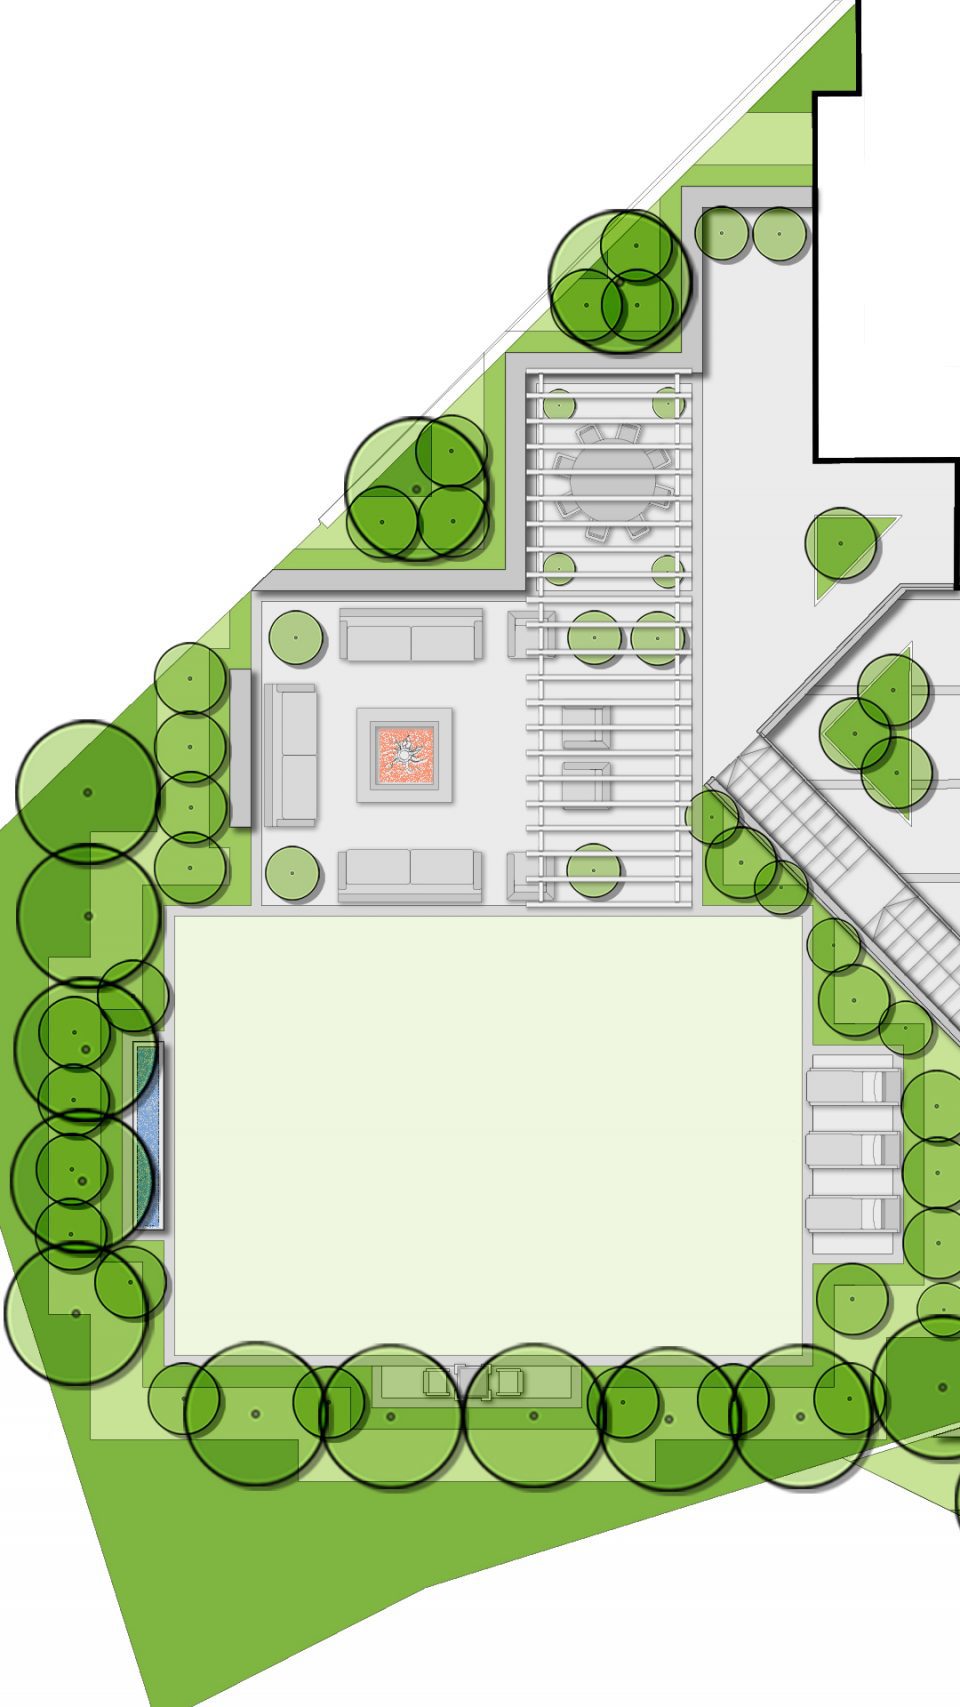 hendon garden design masterplan nw4 concept landscape architects